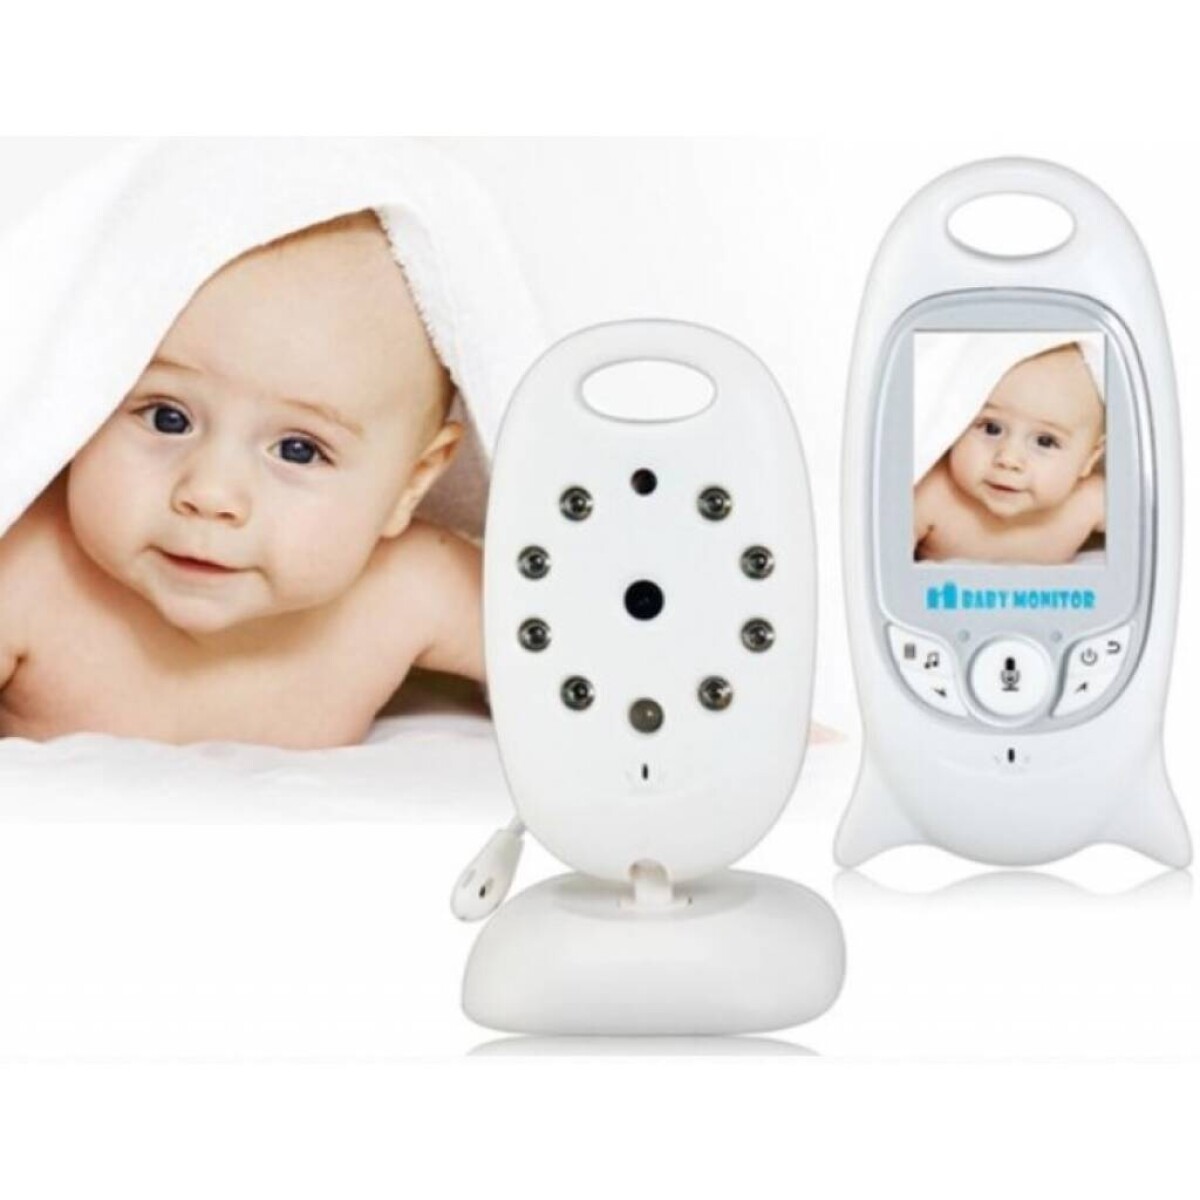 Monitor de Bebe Babycall Cámara Intercomunicador Espía - 001 